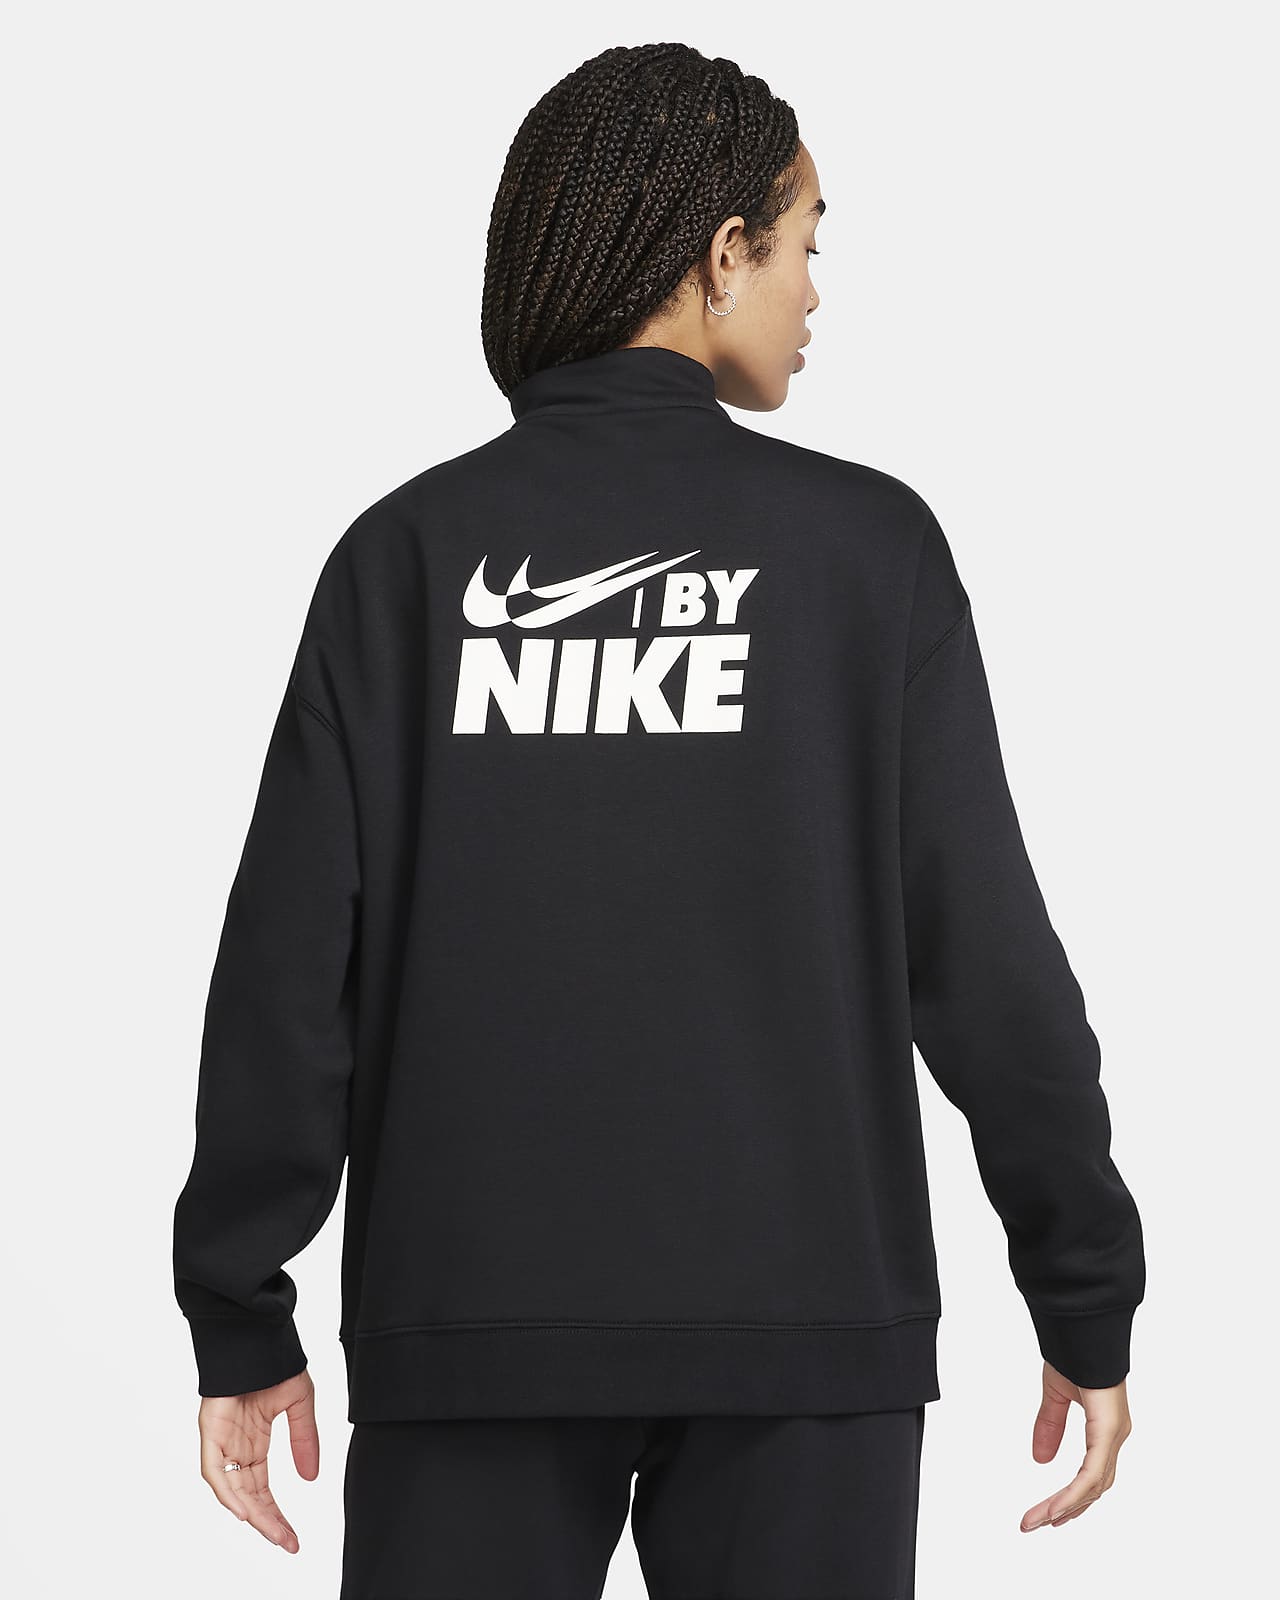 Nike Sportswear Women's Oversized Fleece Pullover Hoodie. Nike LU